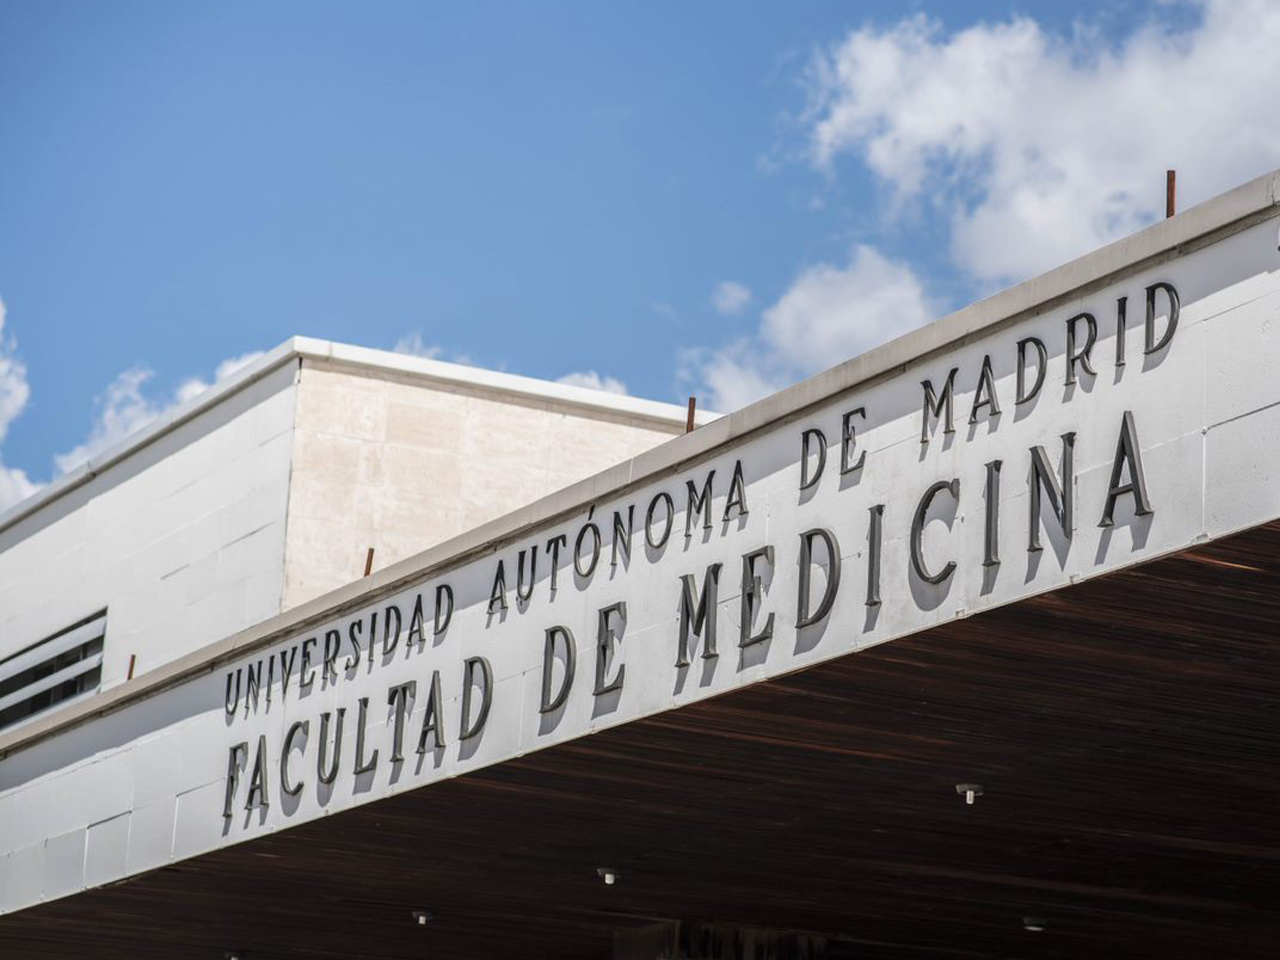 imagen parcial de la fachada de la Facultad de Medicina